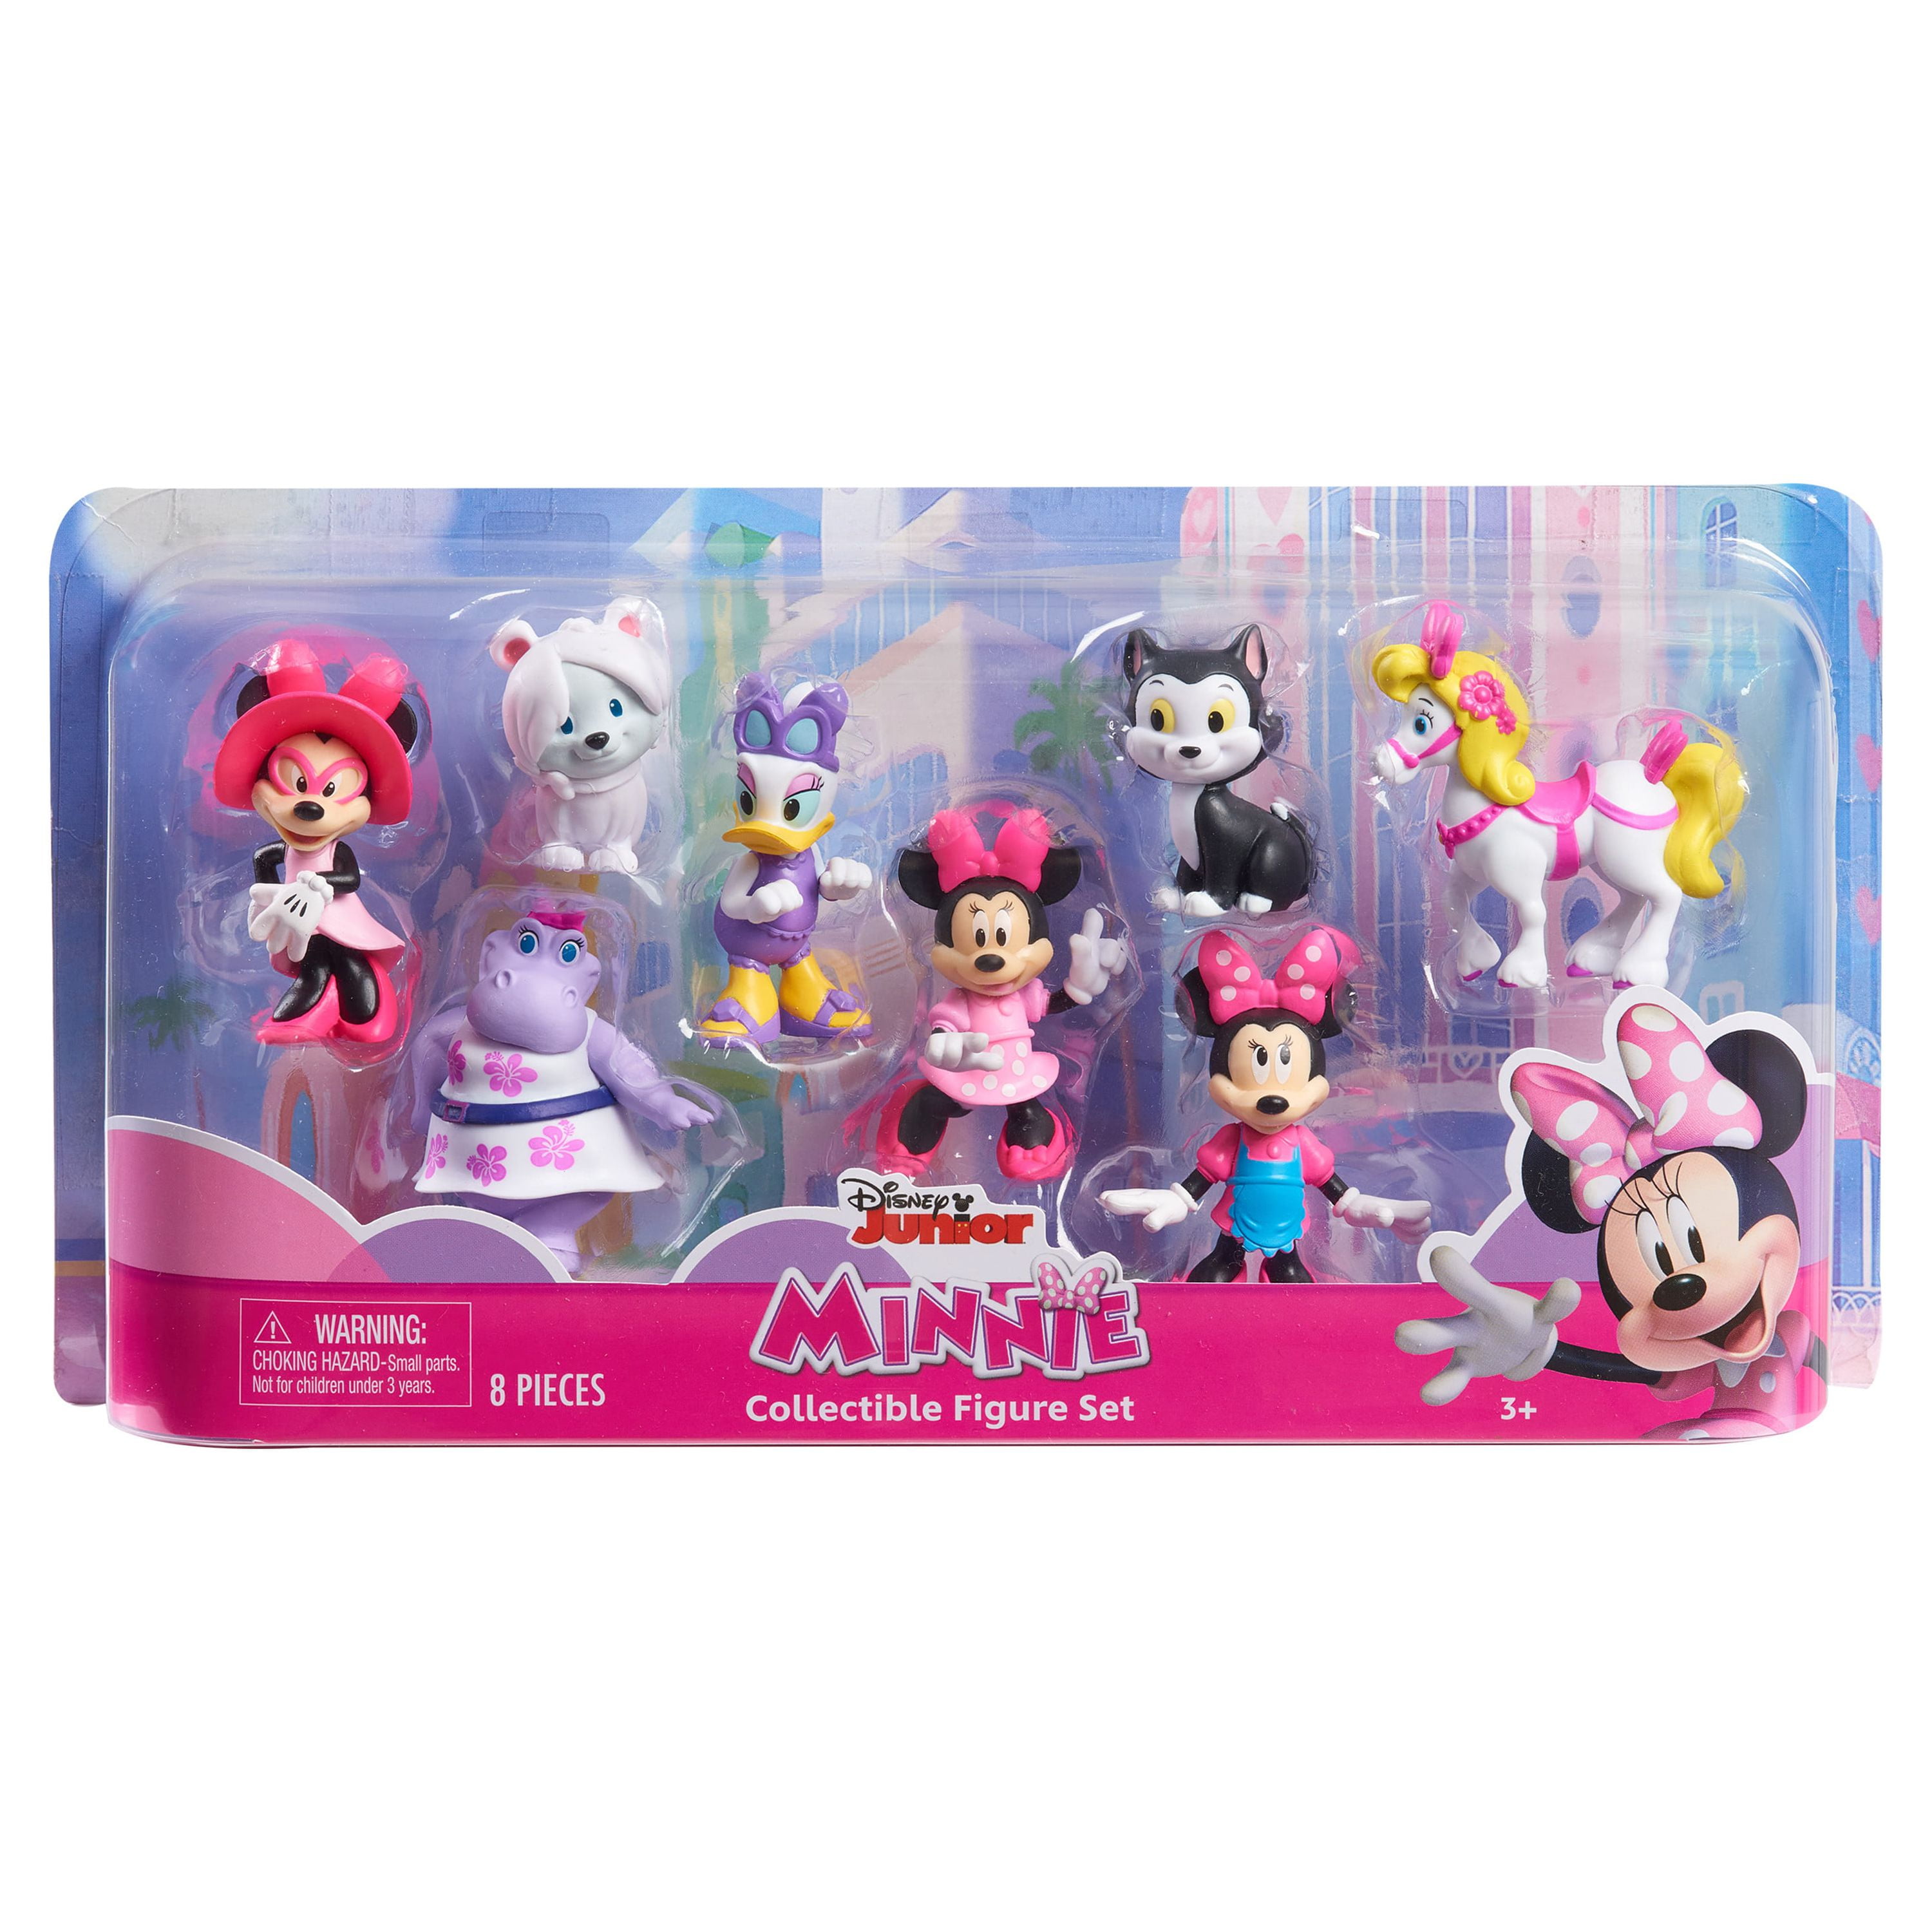 Diario segreto Minni collezione Minnie Mouse Mystical Disney Store